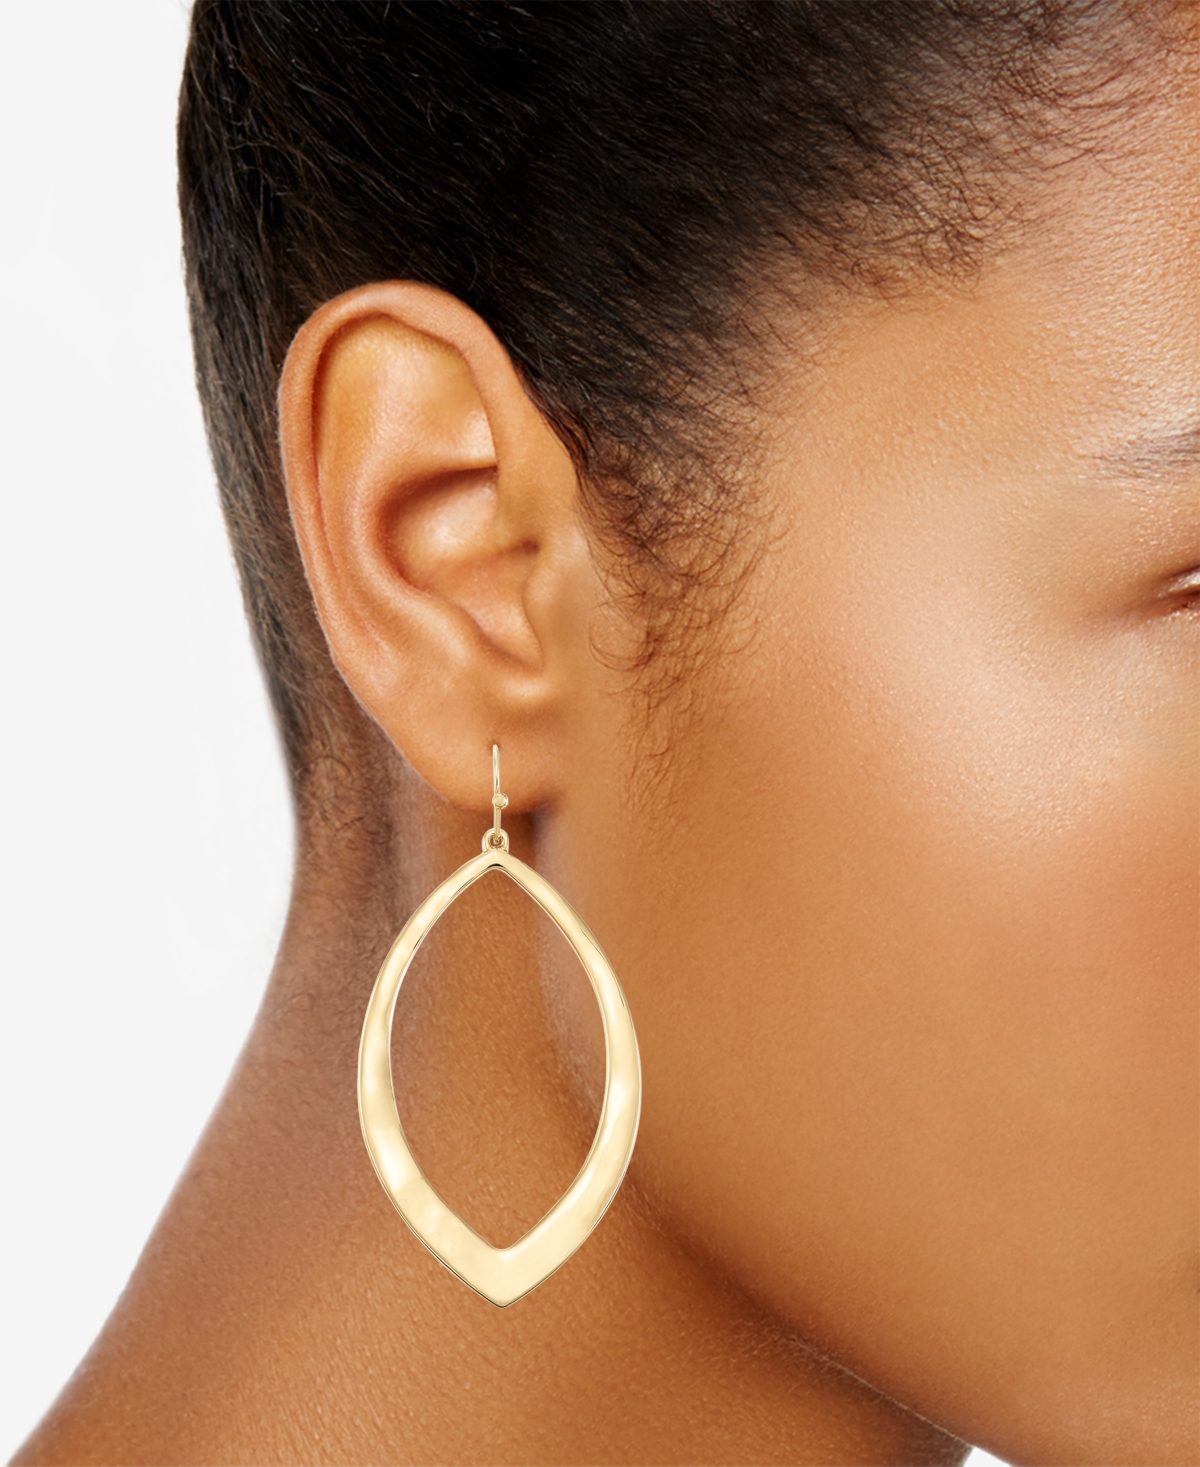 Shop Style & Co Gold-tone Open Tear-shape Drop Earrings, Created For Macy's